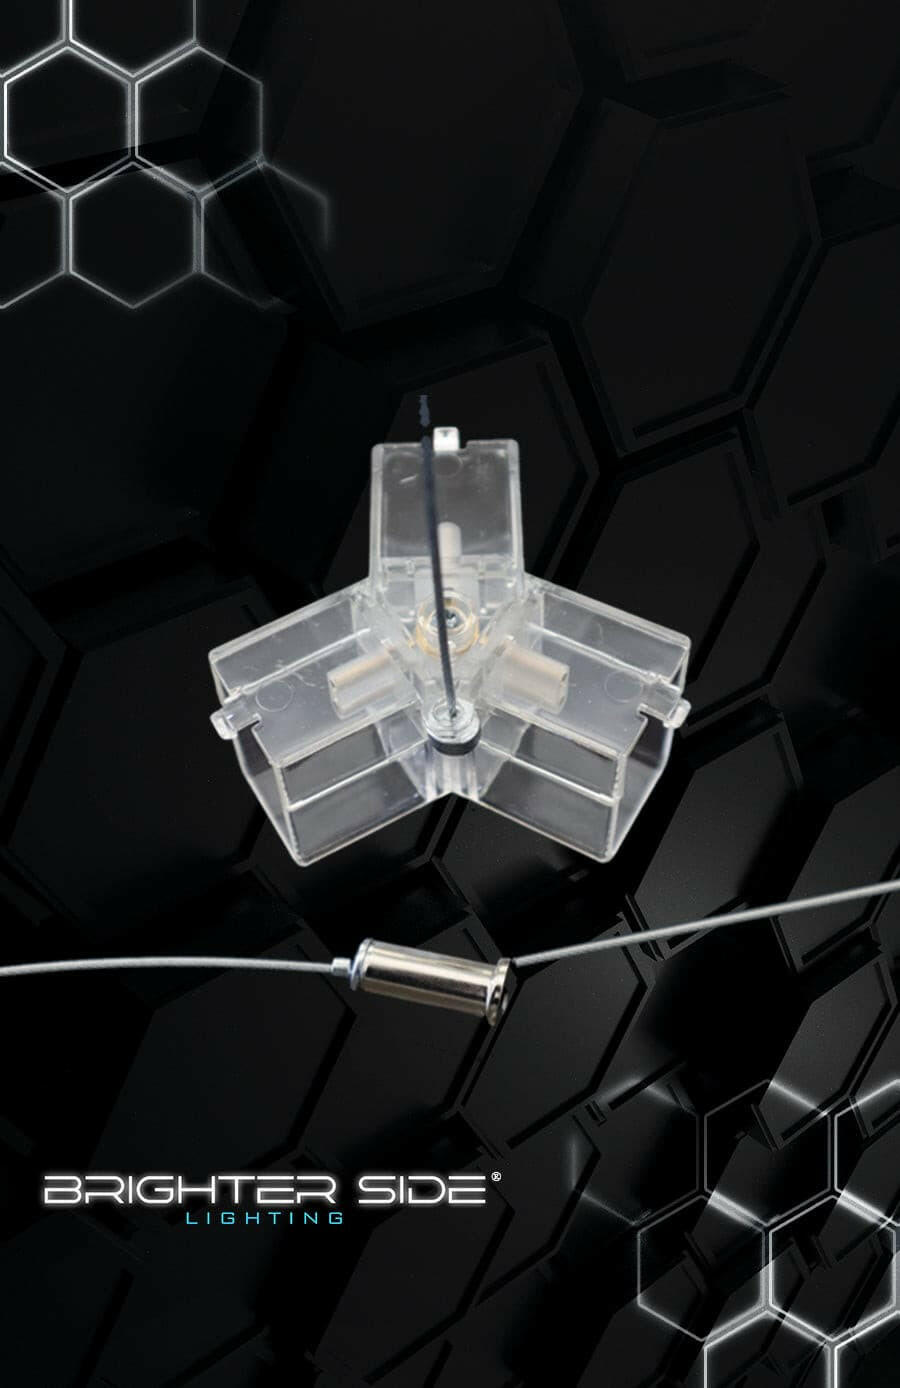 Brighter Side Lighting HIVE Hexagon LED Lighting Ceiling Hanger Kit Assembly Adjustable Height